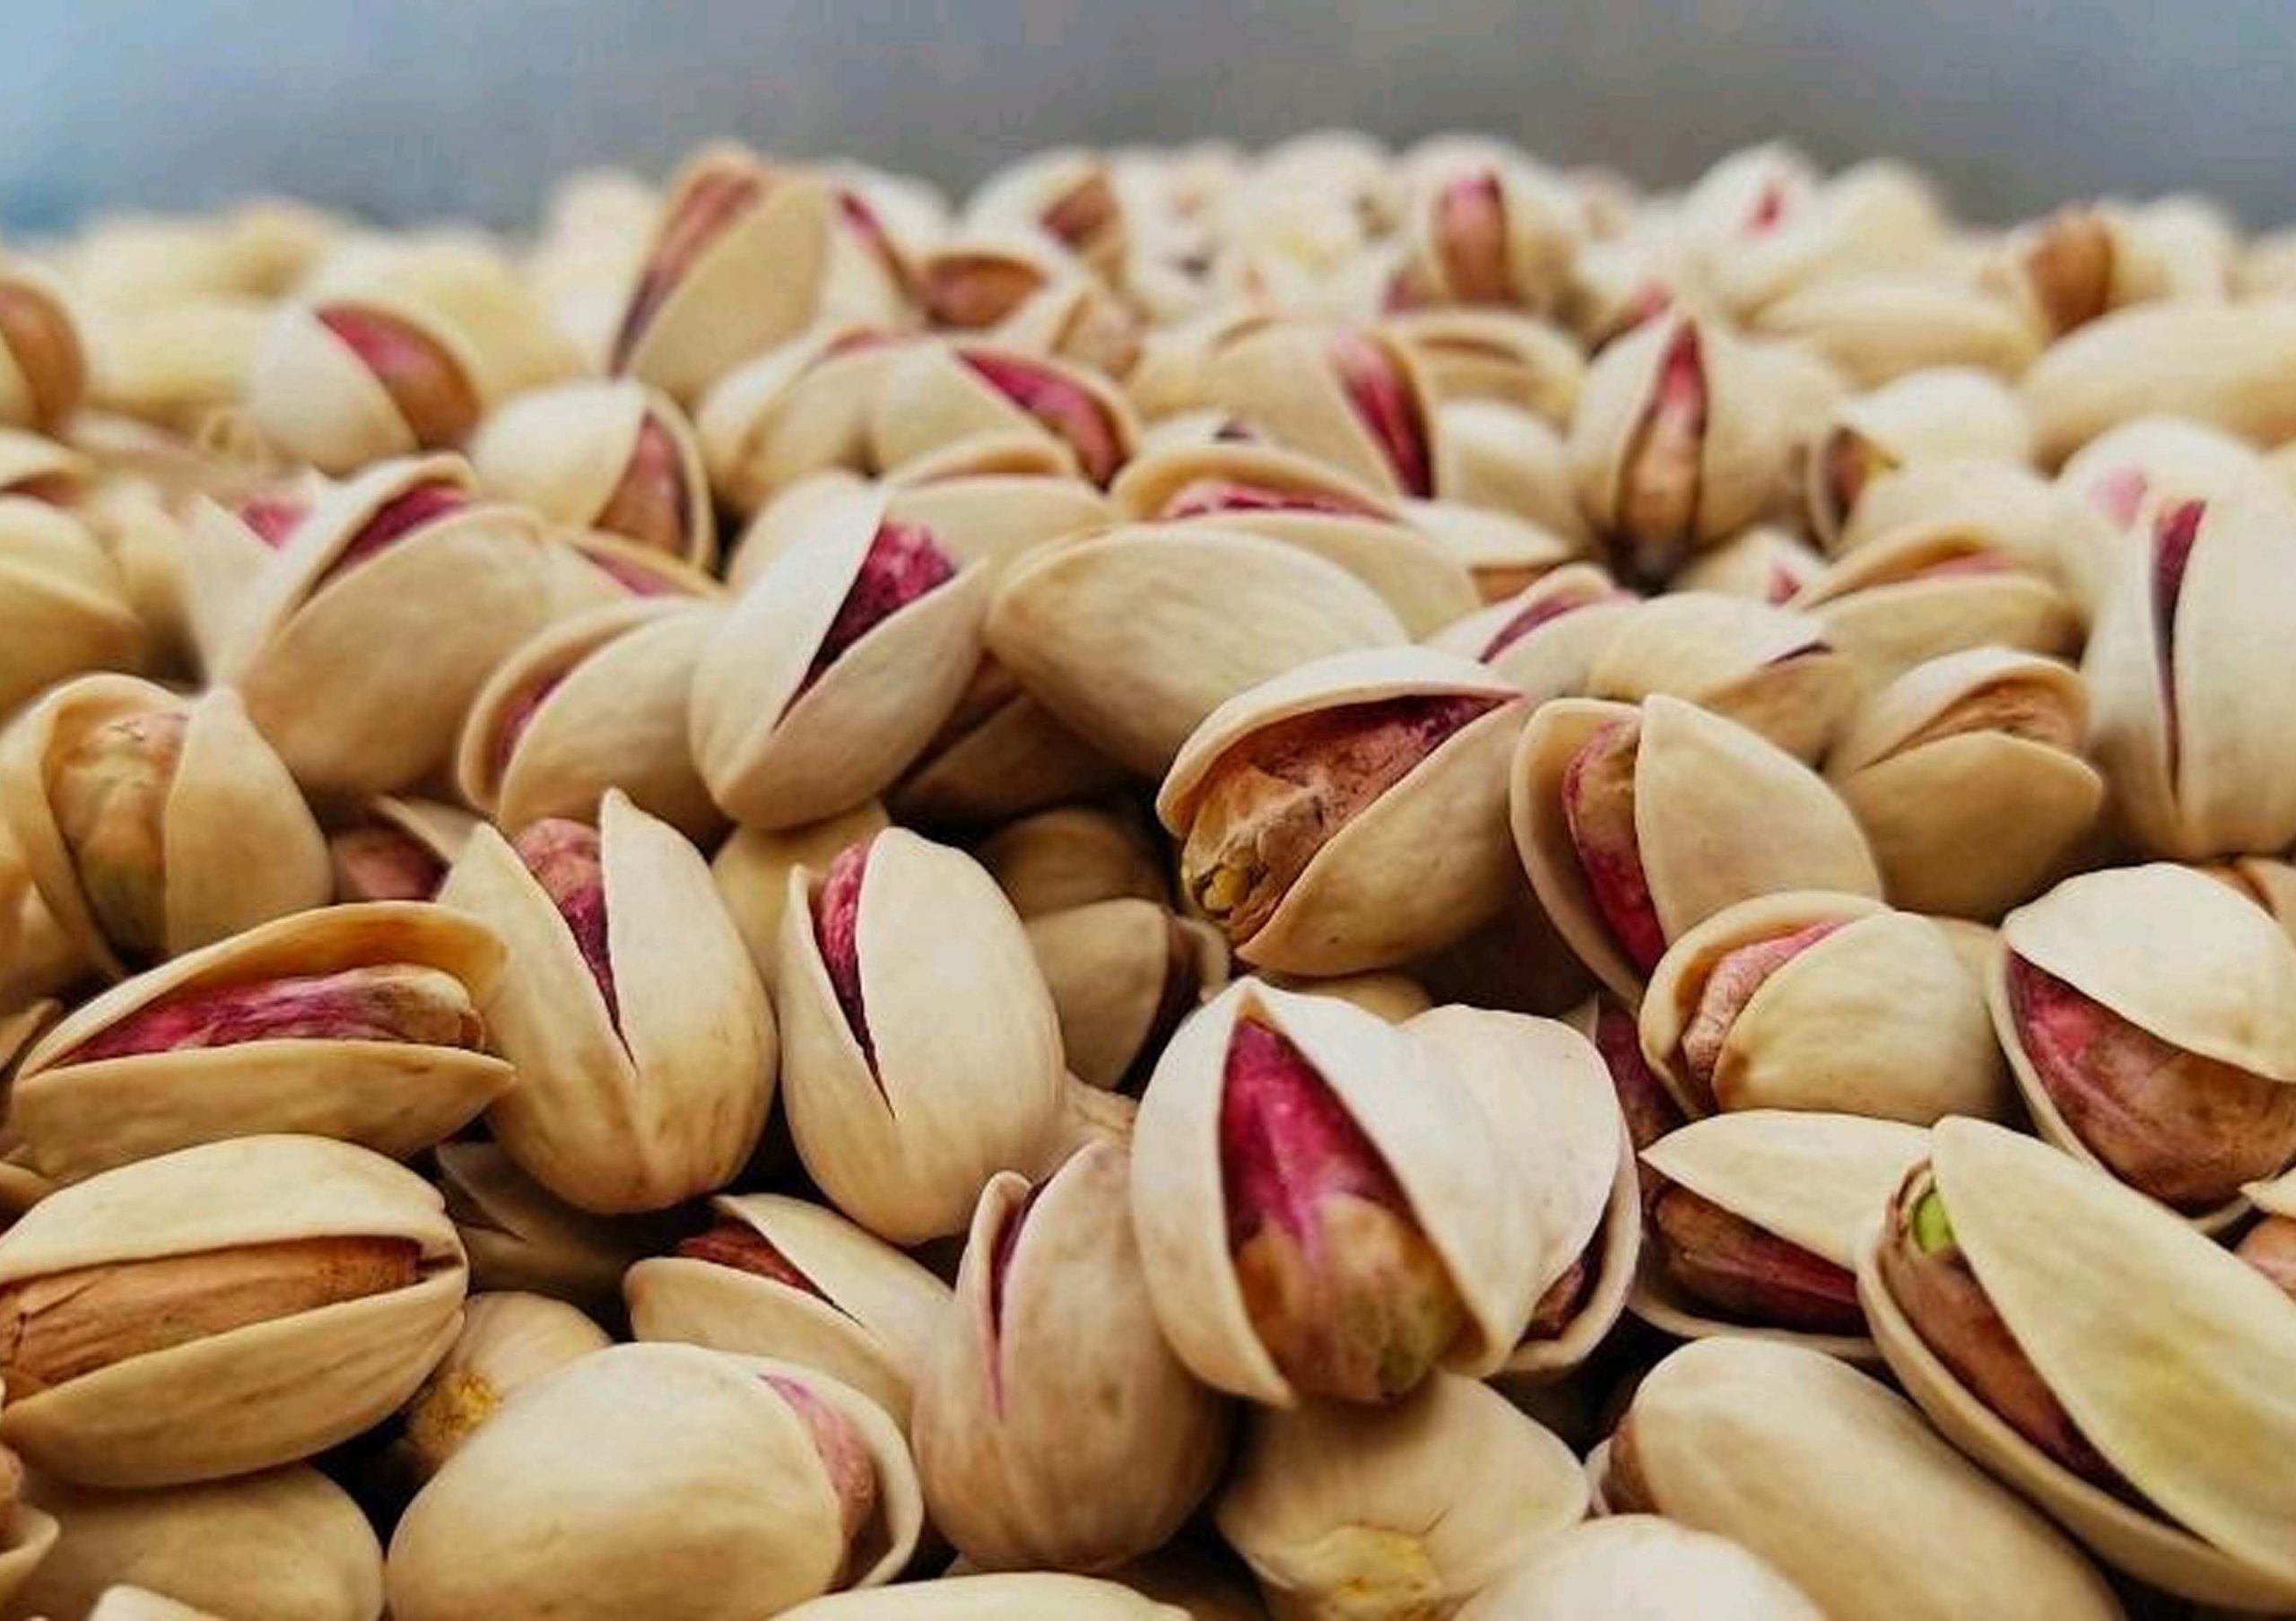 Types of pistachios; Buy pistachios: